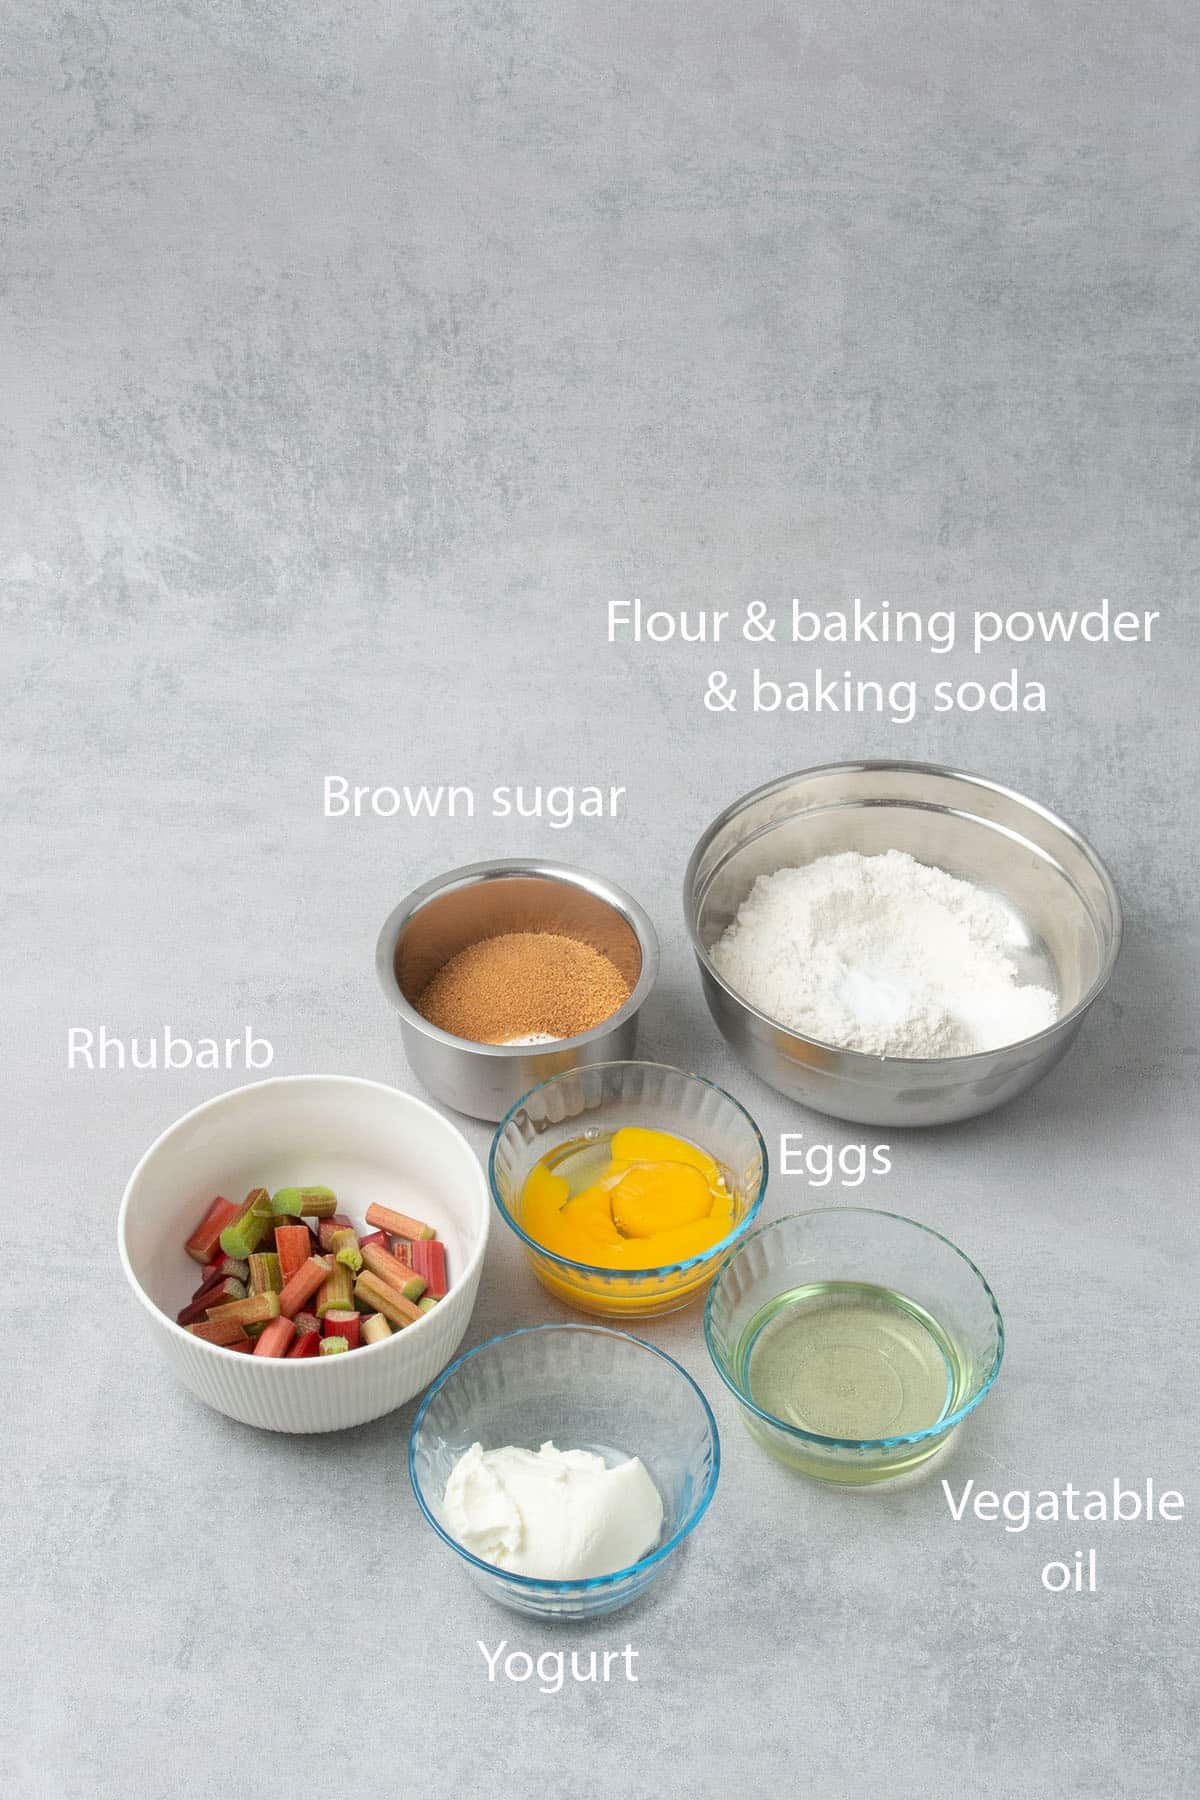 Rhubarb cake ingredients.